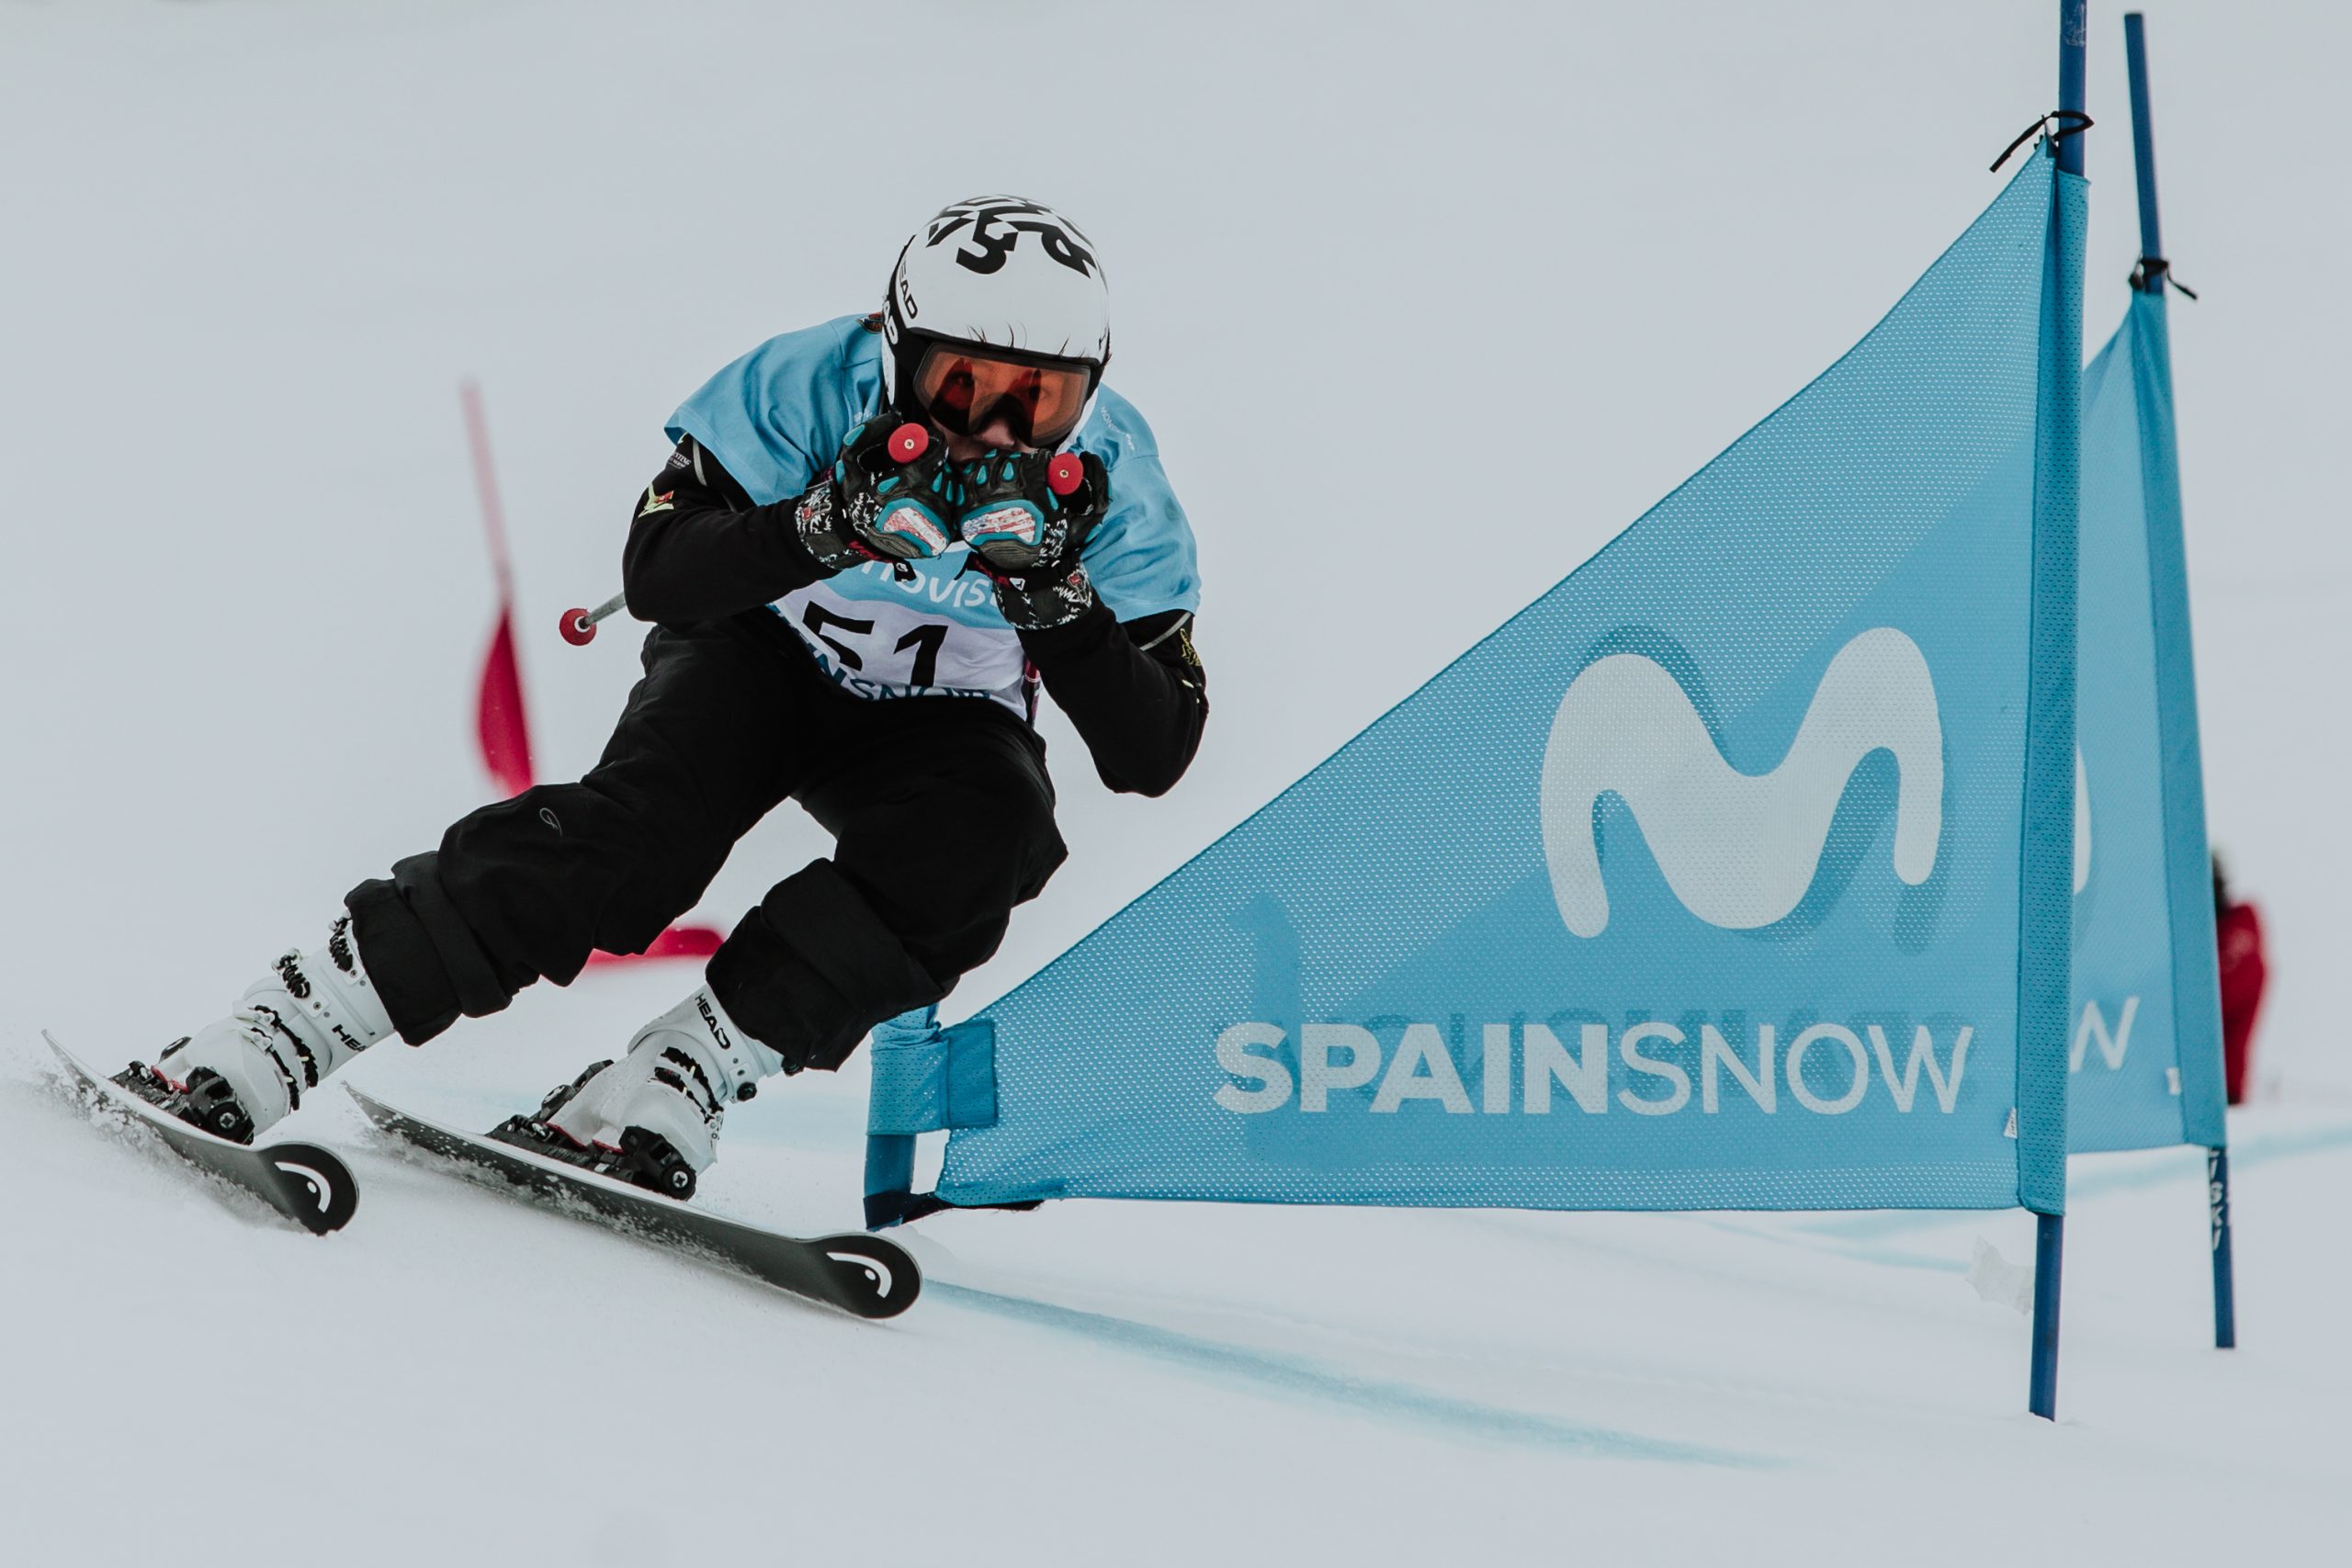 La segunda fase de la Copa de España Movistar de snowboardcross y skicross sigue en Sierra Nevada el fin de semana del 27 y 28 de febrero